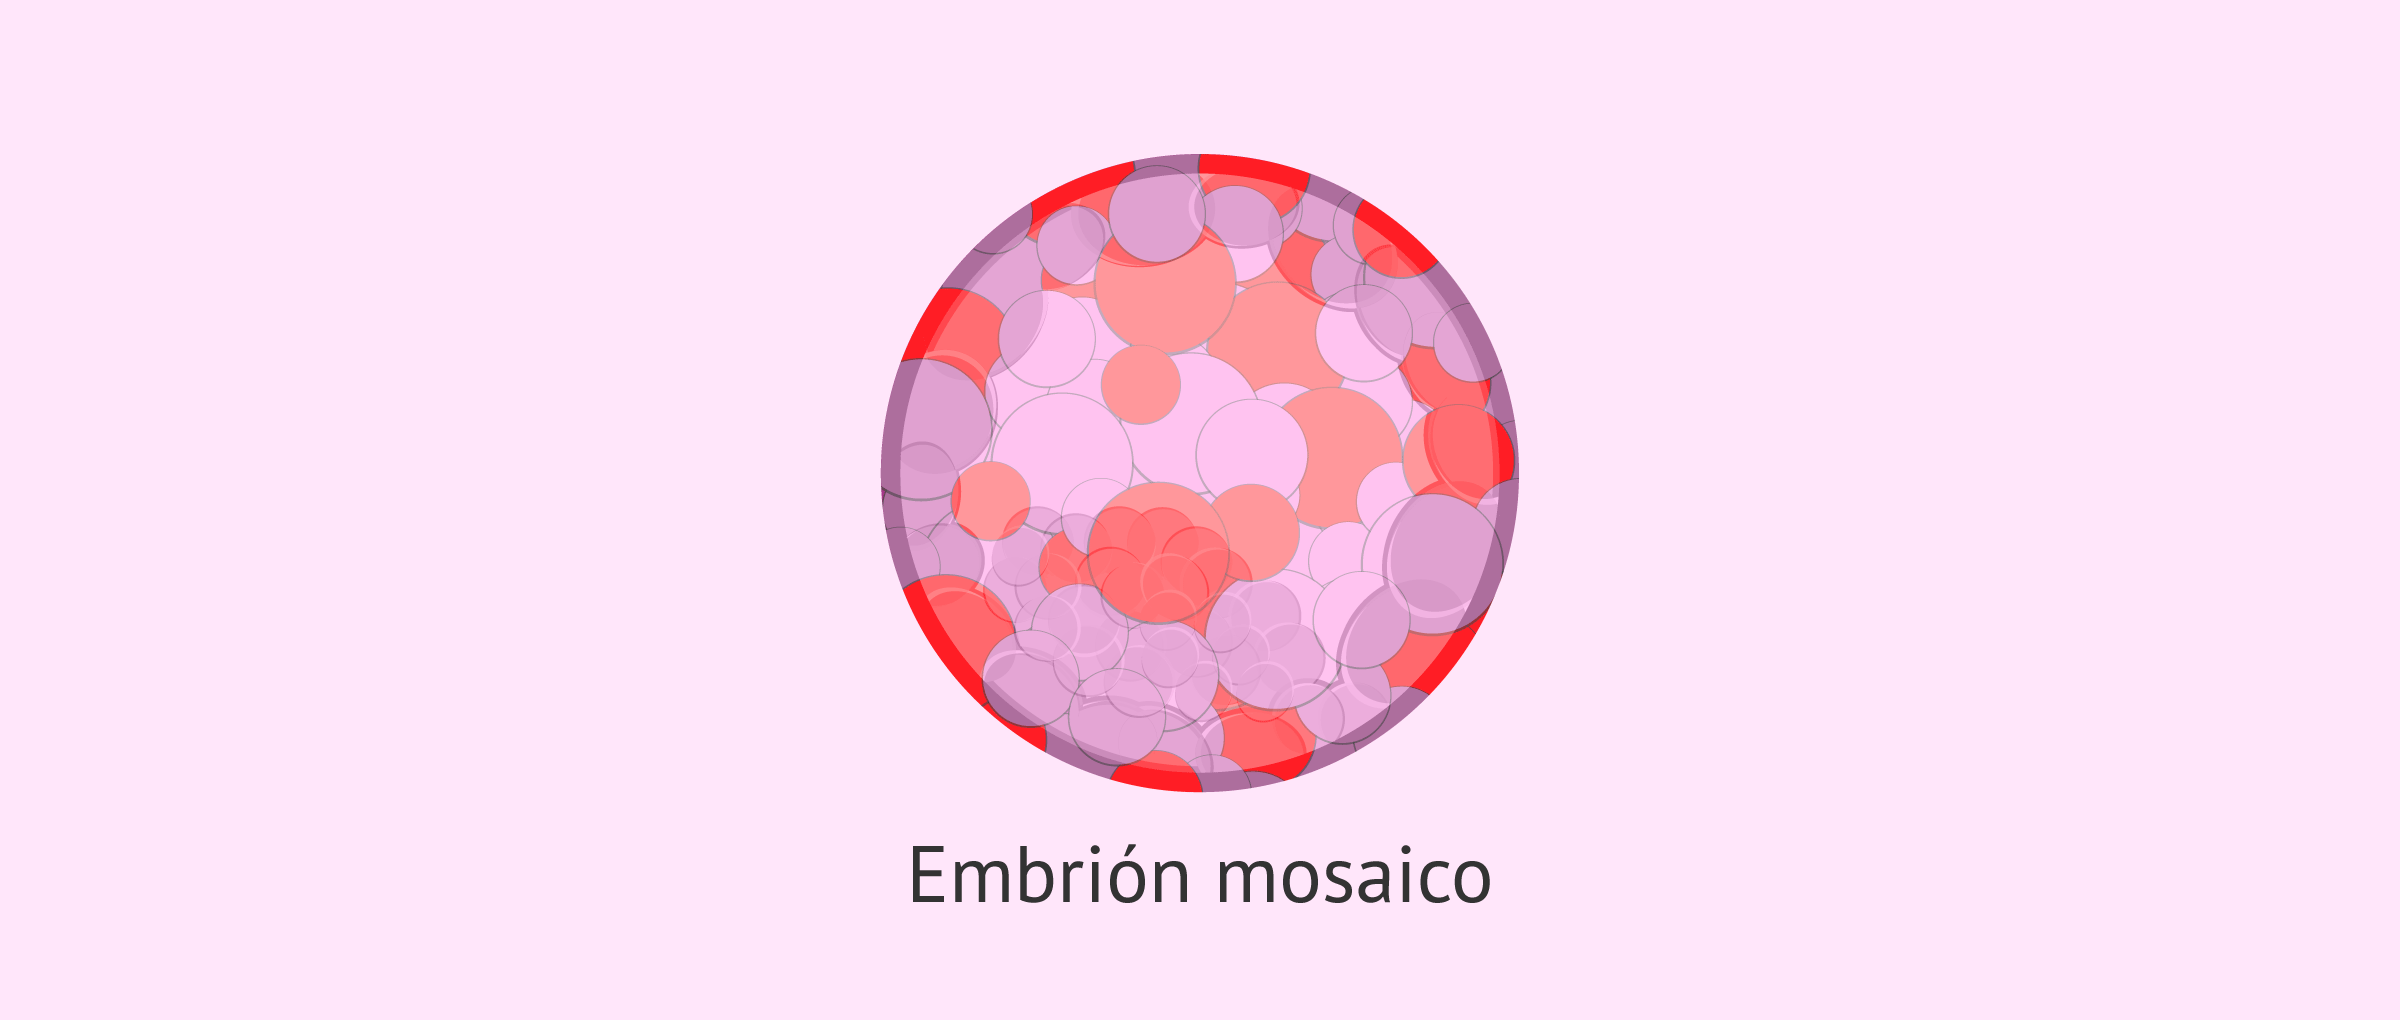 embrion-mosaico